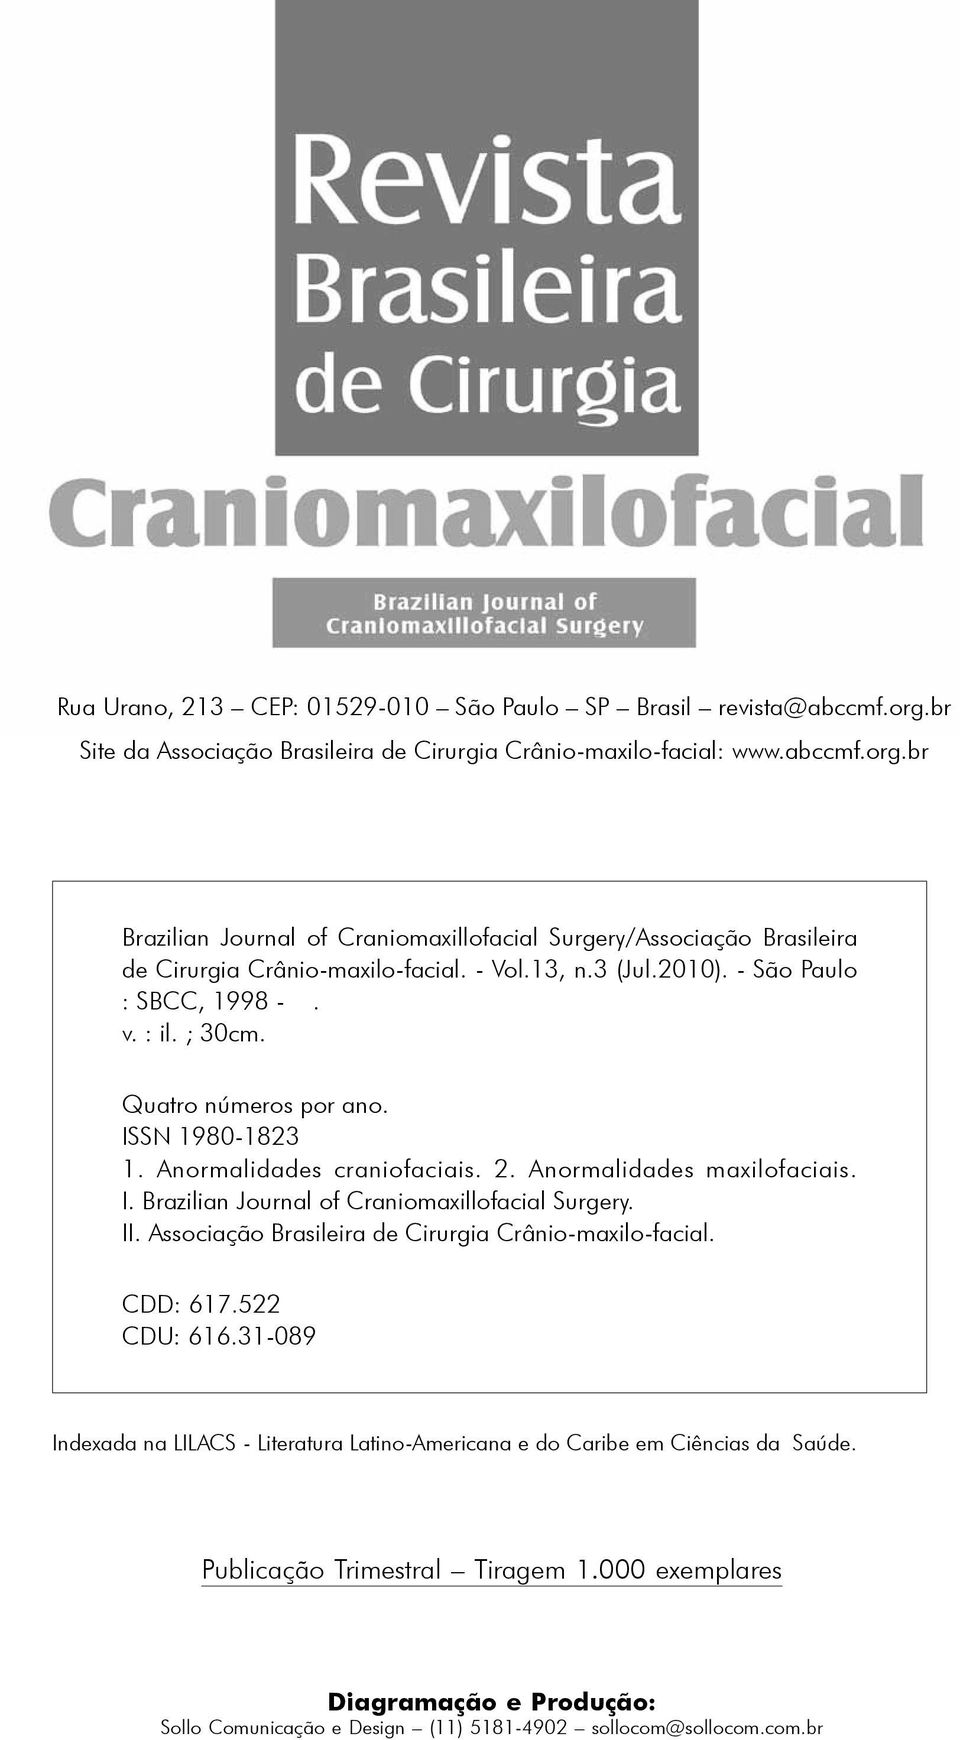 II. Associação Brasileira de Cirurgia Crânio-maxilo-facial. CDD: 617.522 CDU: 616.31-089 Indexada na LILACS - Literatura Latino-Americana e do Caribe em Ciências da Saúde.